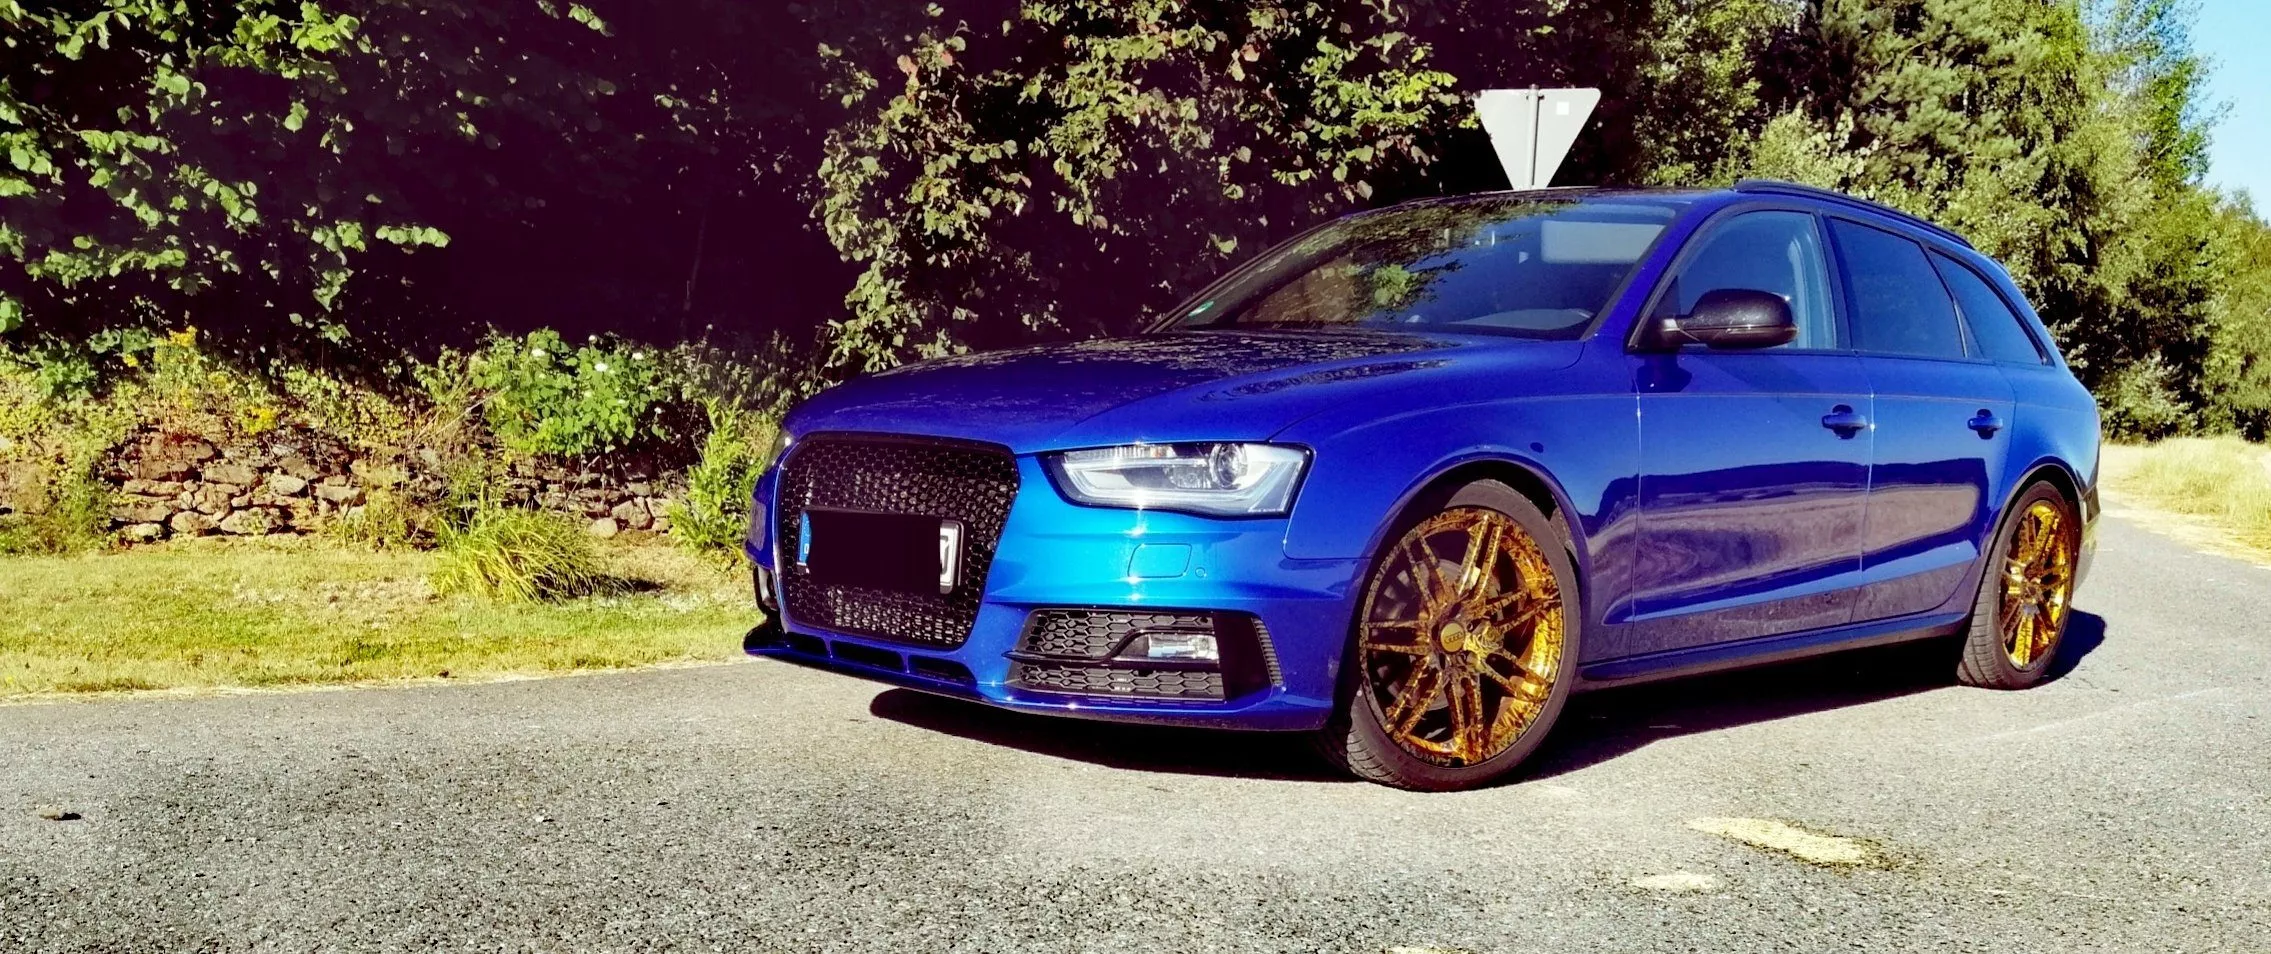 Audi – A4 – Blau – ORIGINAL AUDI – 7-Doppelspeichen-Design – Gold – 19 Zoll